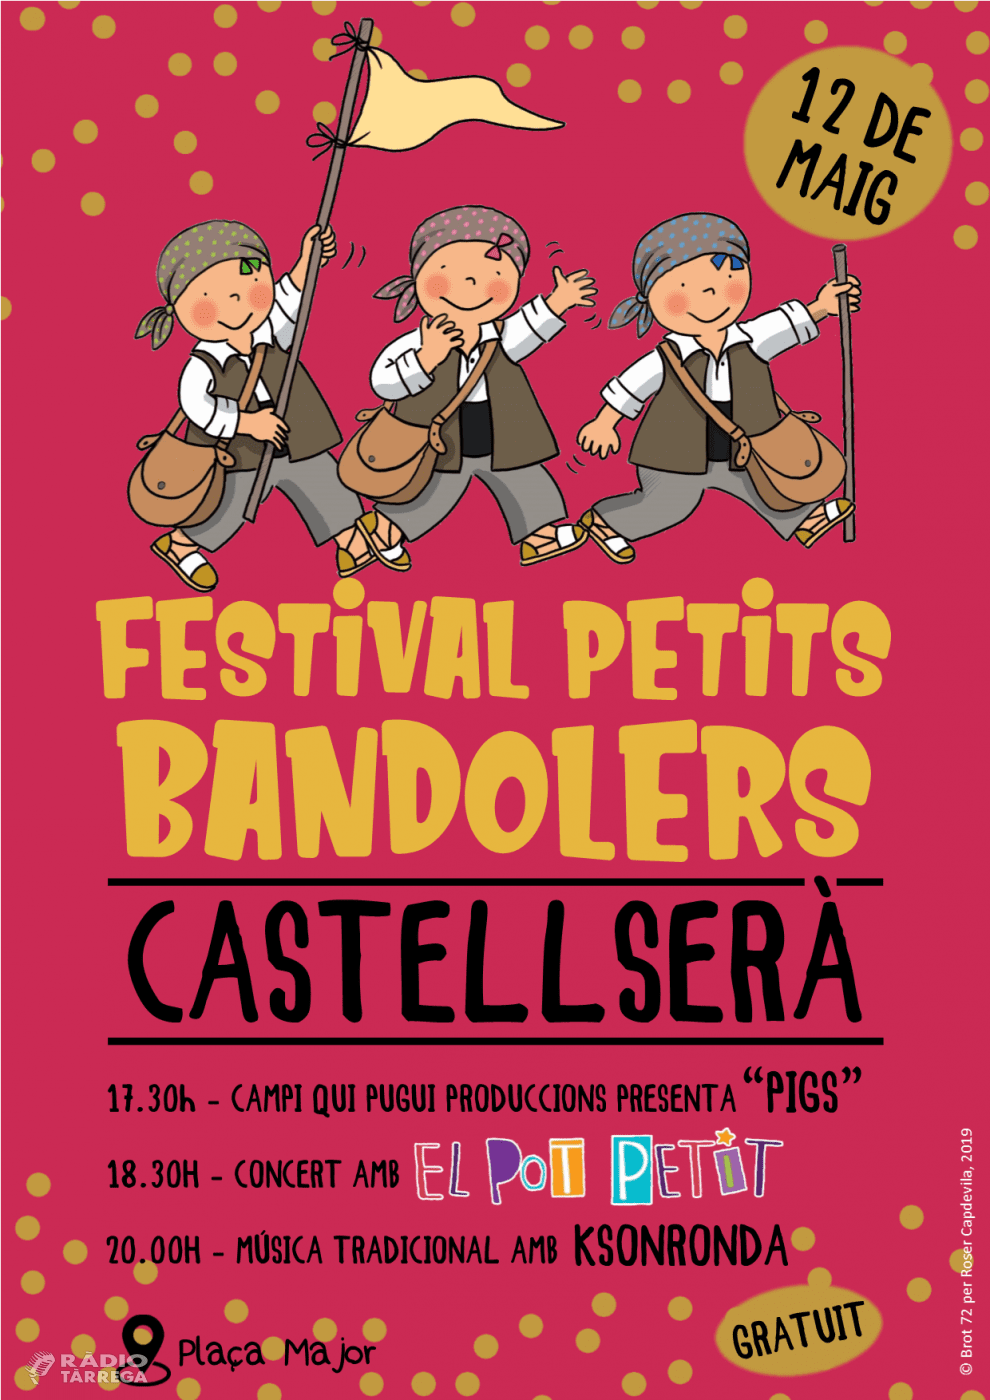 La Festa del Bandoler de Castellserà premia aquest any amb el pedrenyal d’honor a la il·lustradora Roser Capdevila i estrena el festival Petits Bandolers